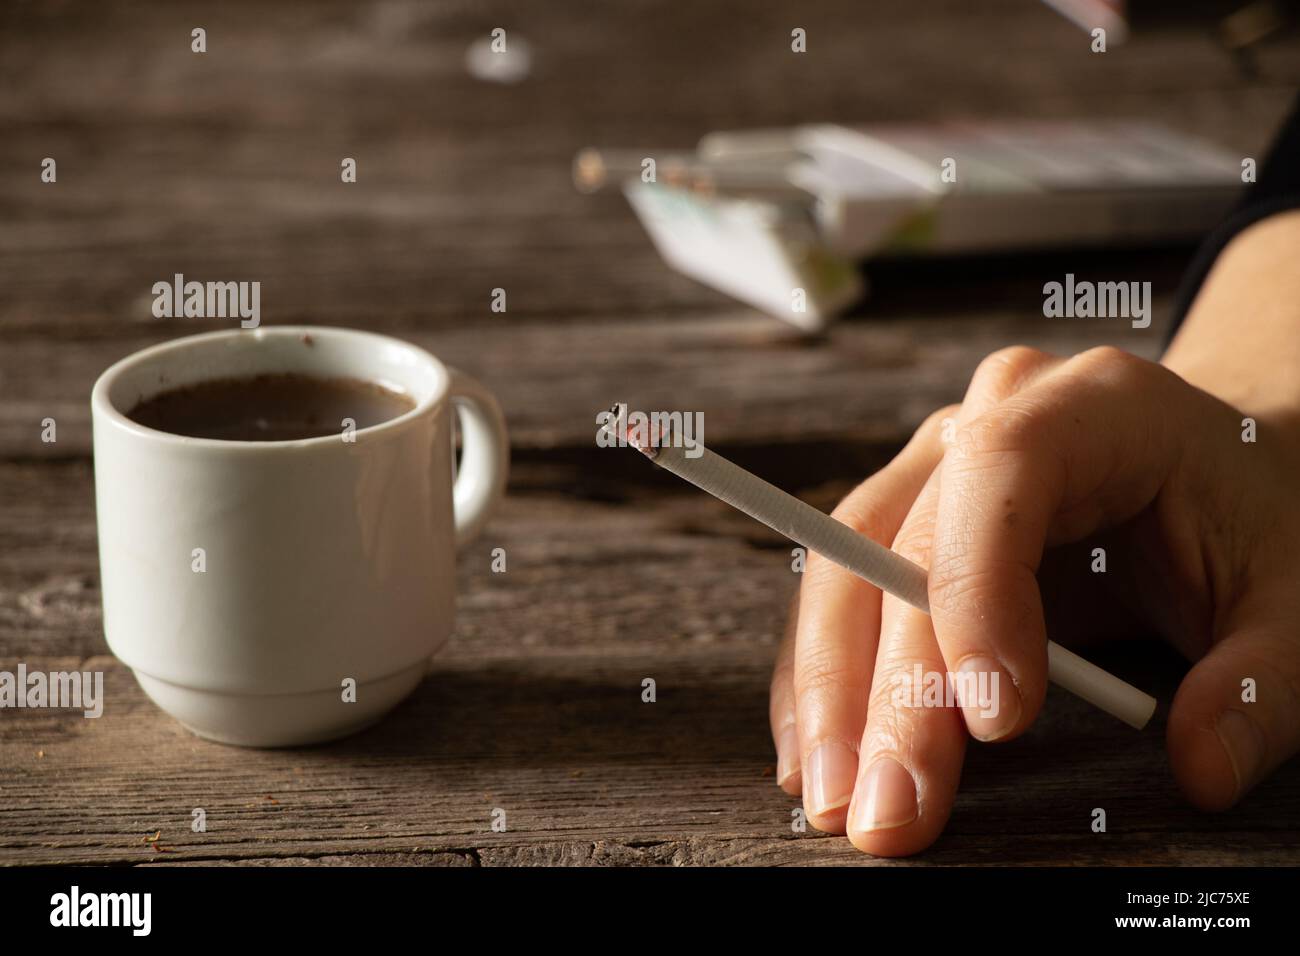 Eine Zigarette in den Händen eines Mädchens auf dem Tisch neben einer Tasse Kaffee, Zigaretten und Kaffee, schlechte Gewohnheiten, Rauchen Stockfoto